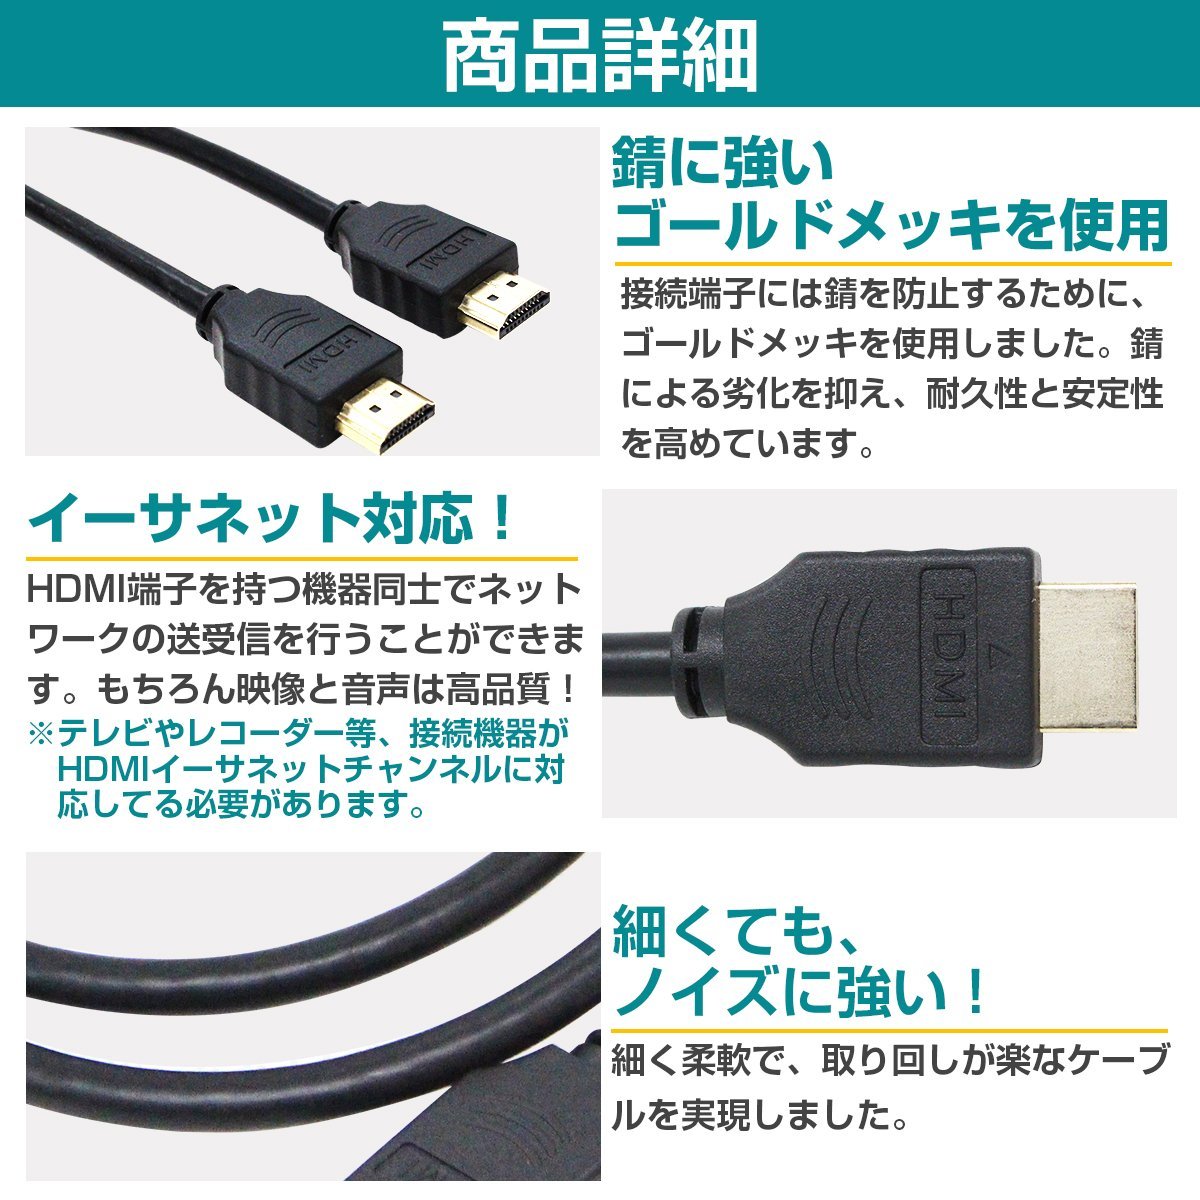 HDMIケーブル 5m 500cm 3D対応/金メッキ仕様 ハイスピード 1.4規格 テレビ パソコン モニター フルハイビジョン対応 イーサーネット対応_画像3